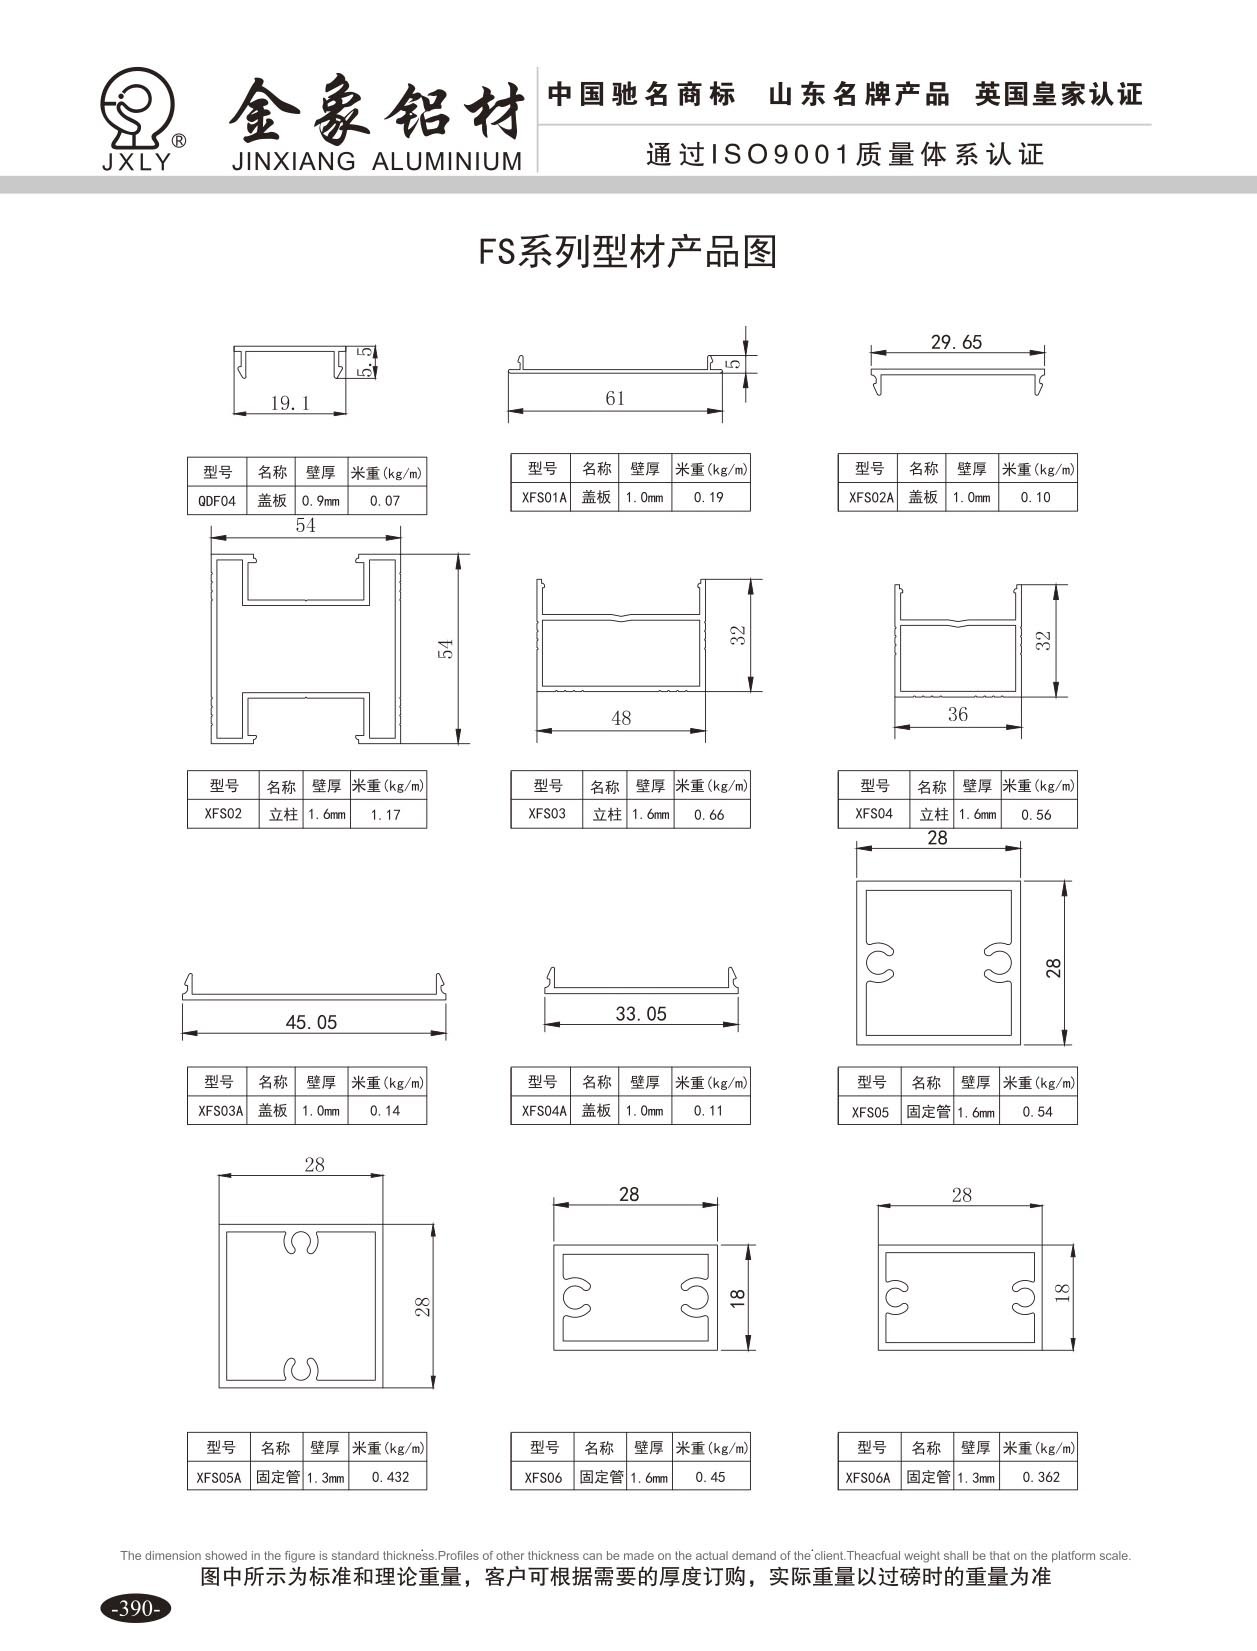 FS系列型材产品图